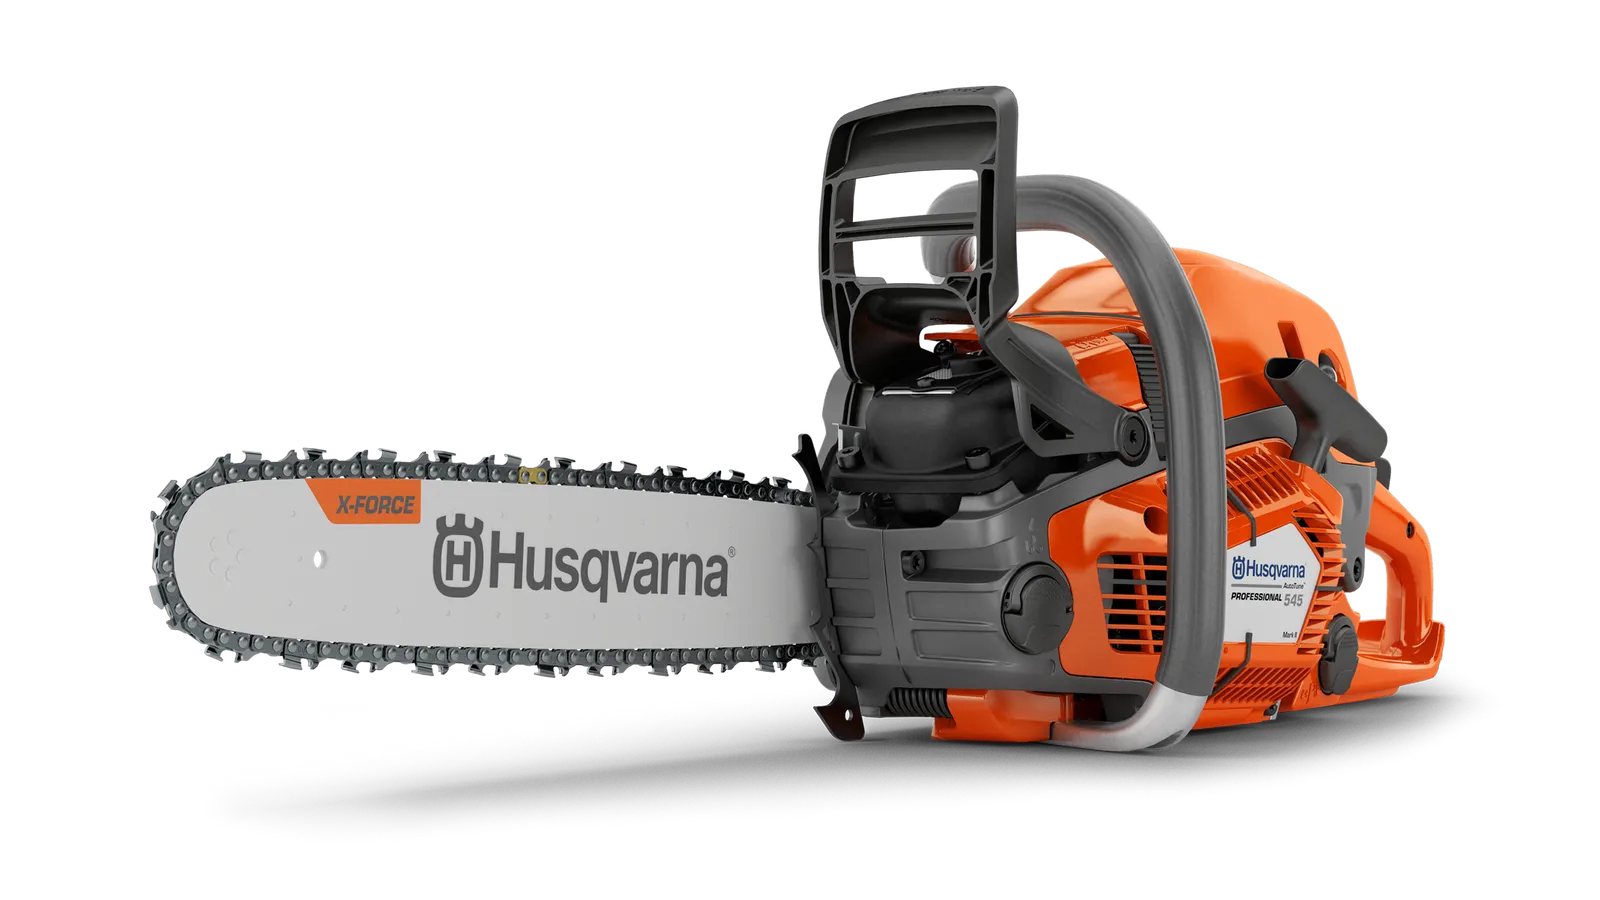 545 Mark II Chainsaw | Husqvarna US